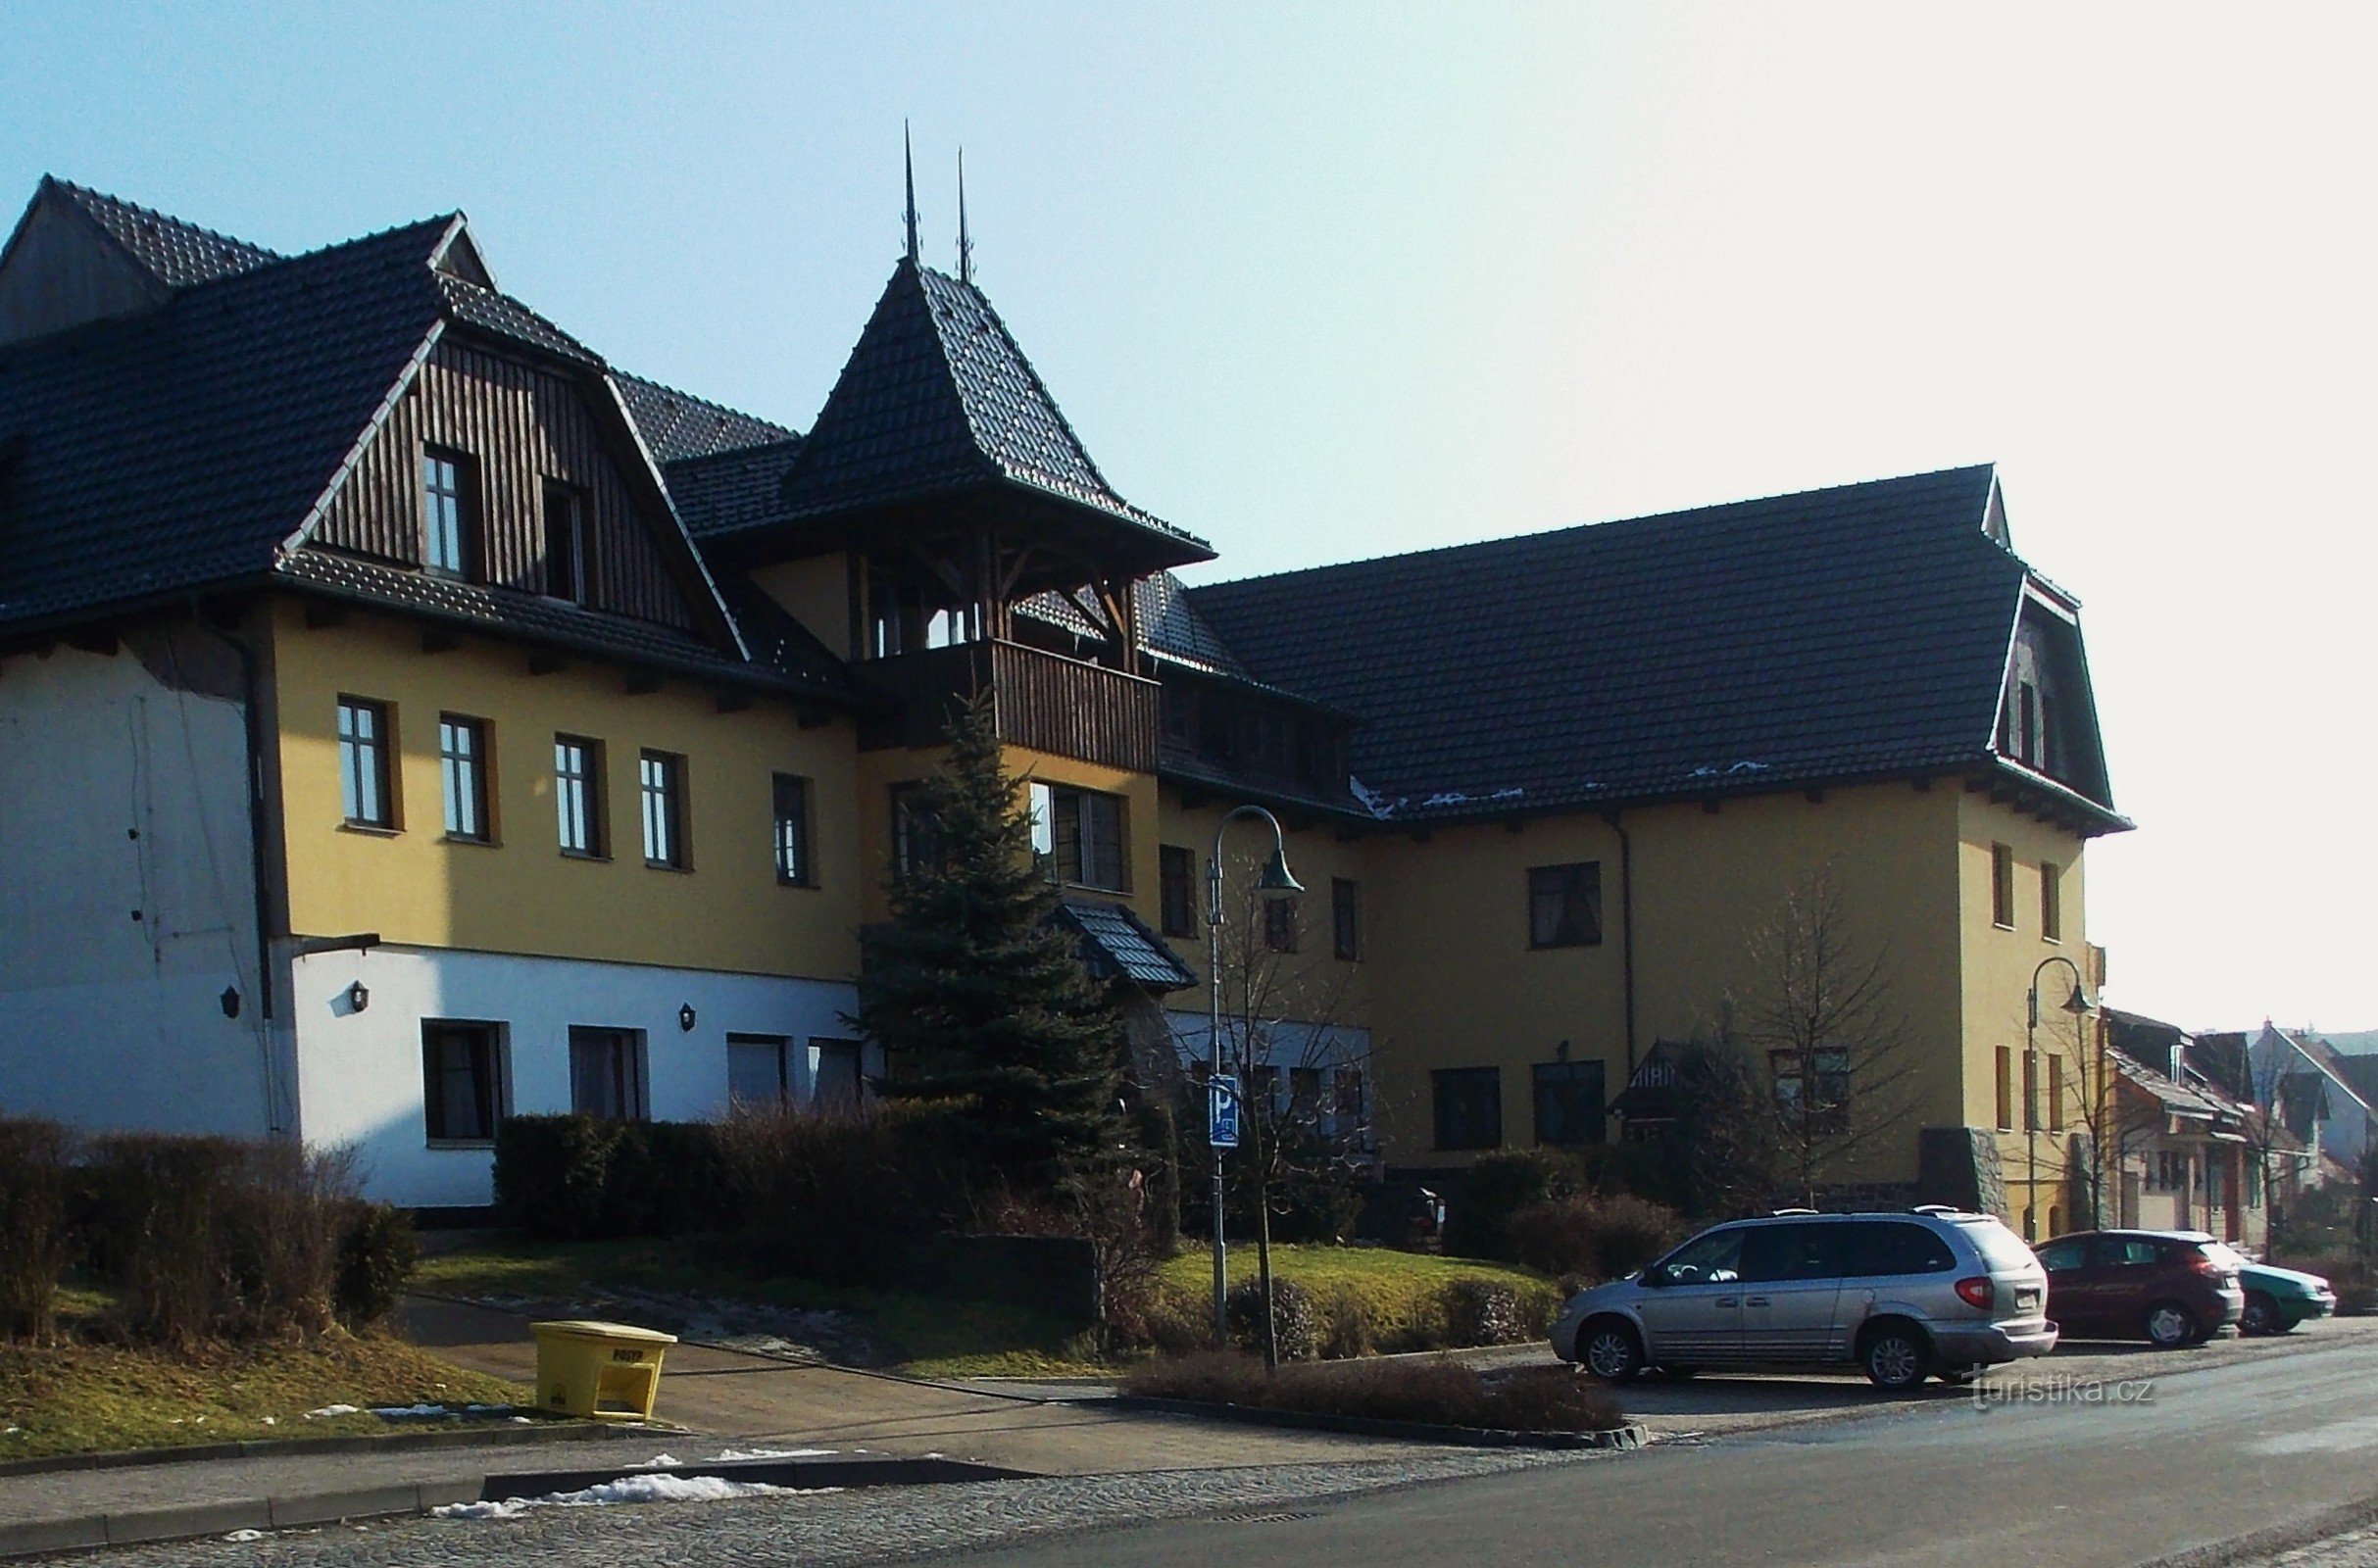 Valašský šenk και Hotel Ogar στο Pozlovice κοντά στο Luhačovice